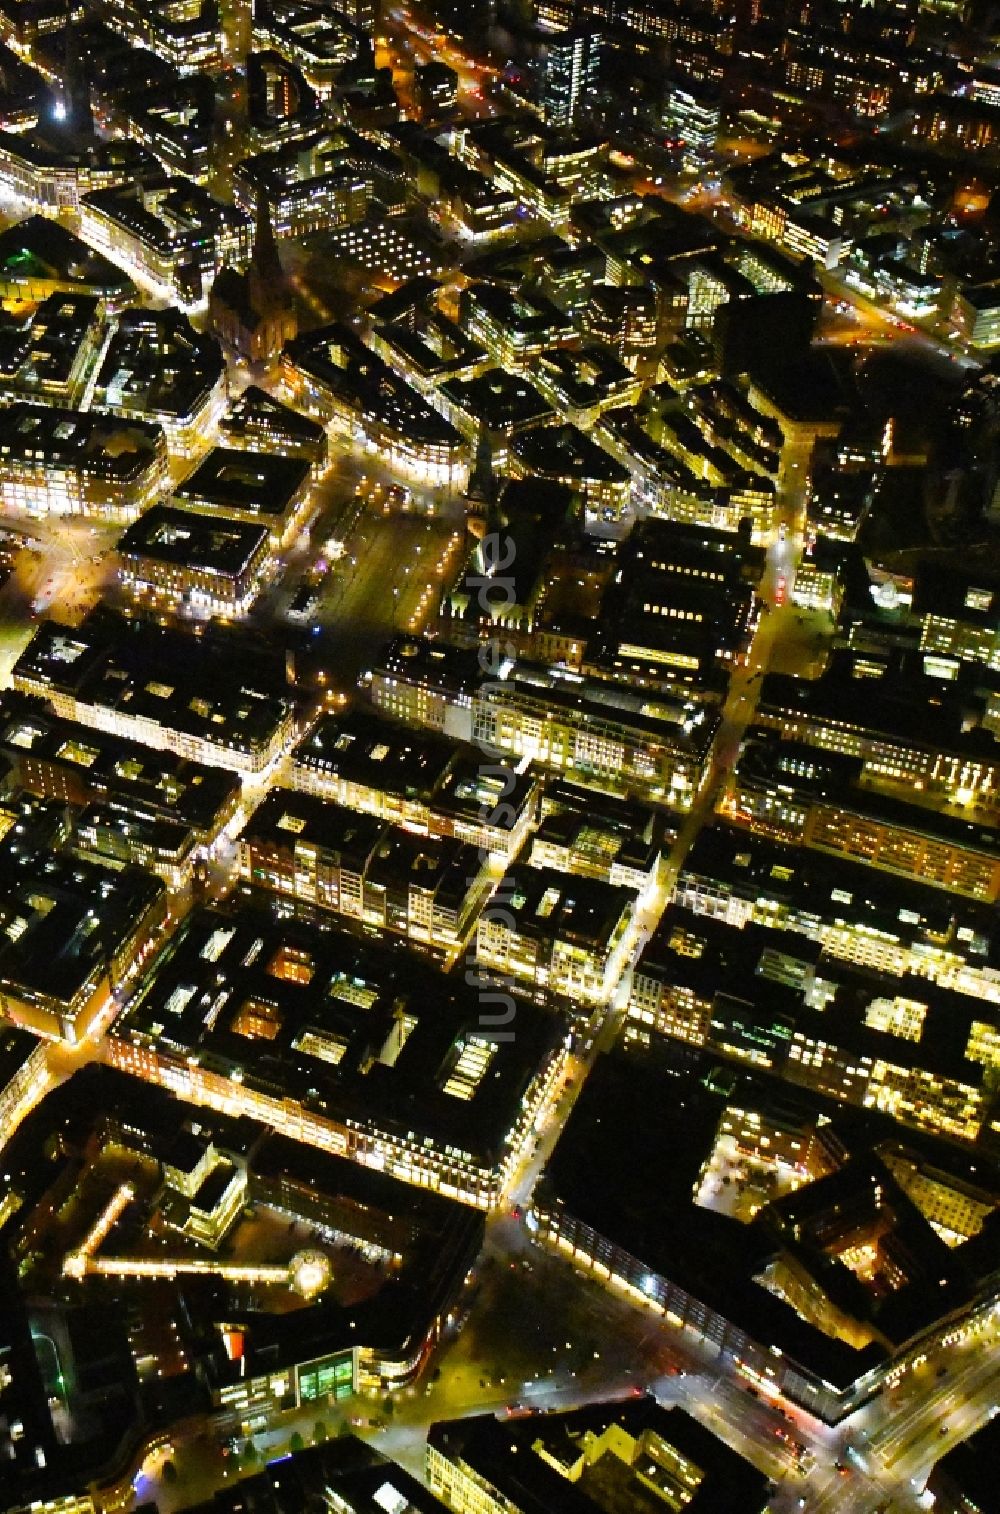 Nacht-Luftaufnahme Hamburg - Nachtluftbild Stadtansicht vom Innenstadtbereich der Altstadt in Hamburg, Deutschland